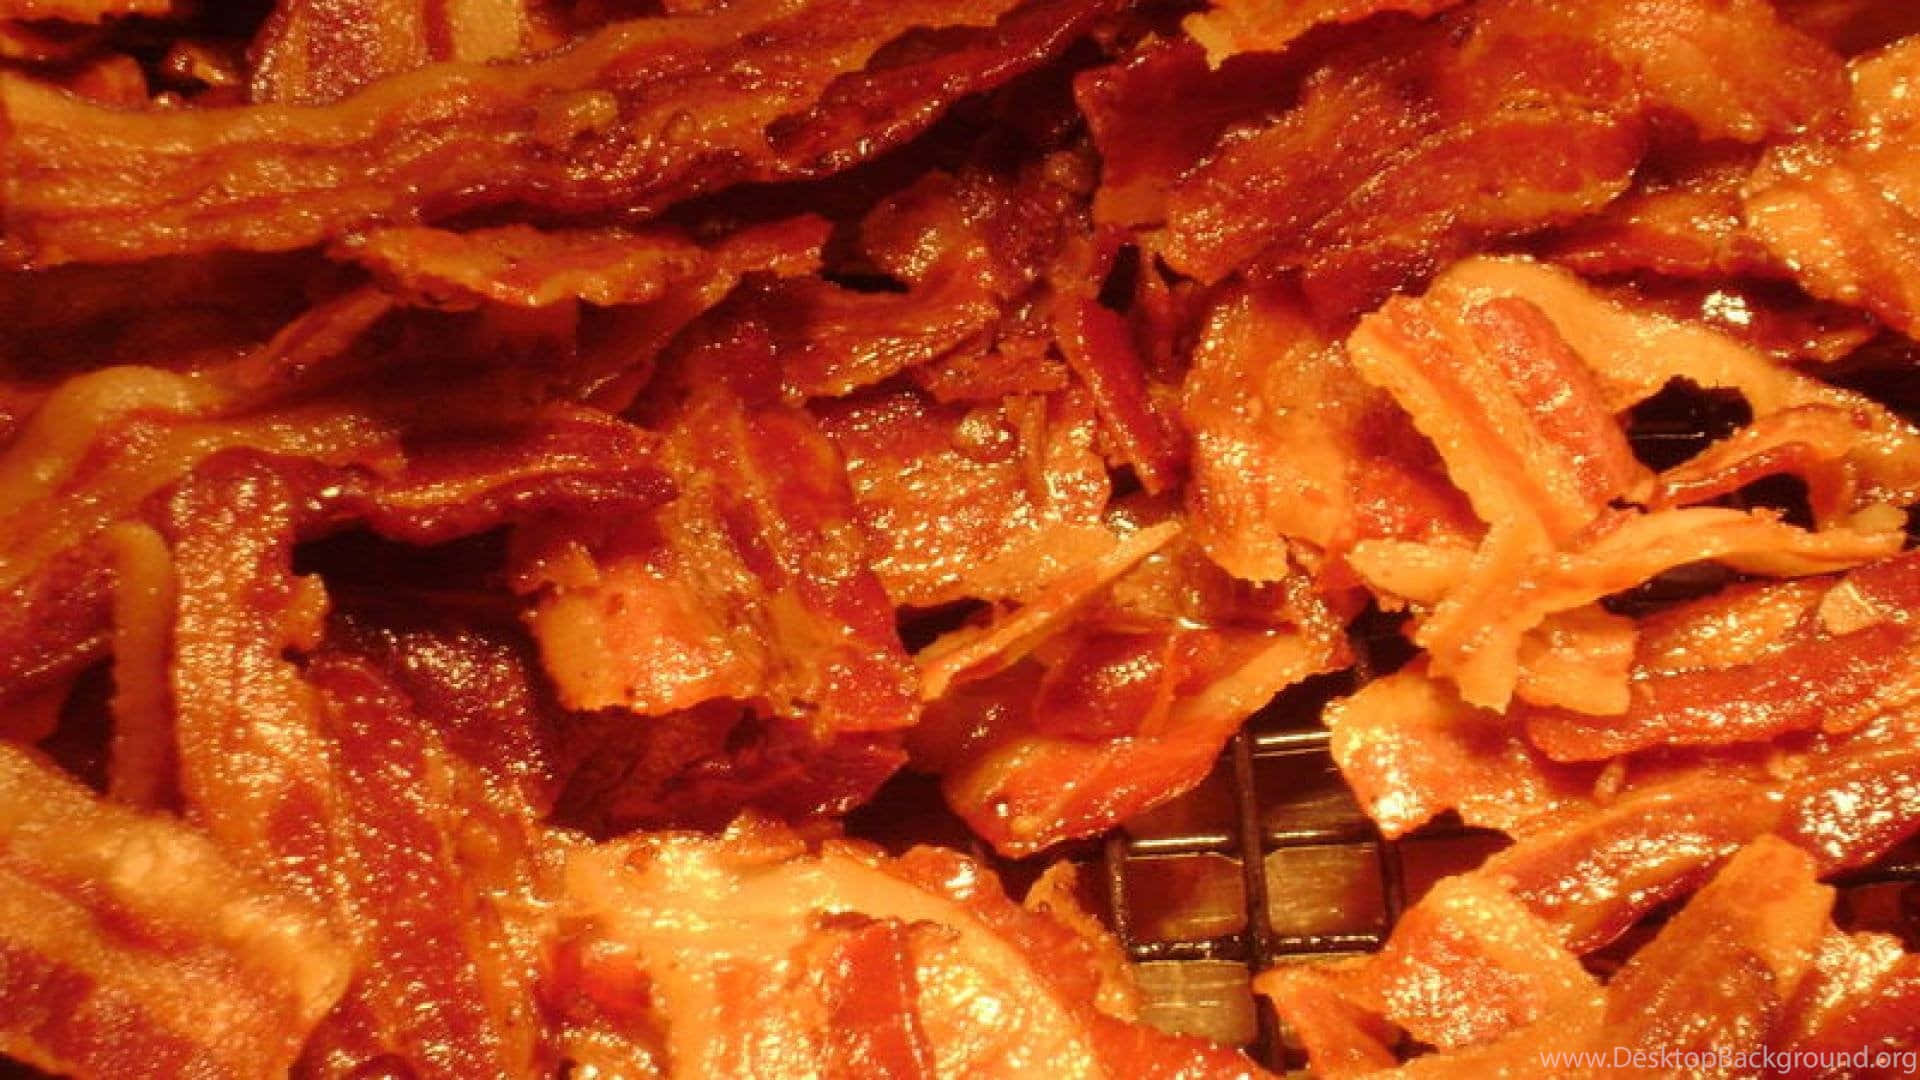 Gustandouna Deliziosa Fetta Di Bacon A Colazione!